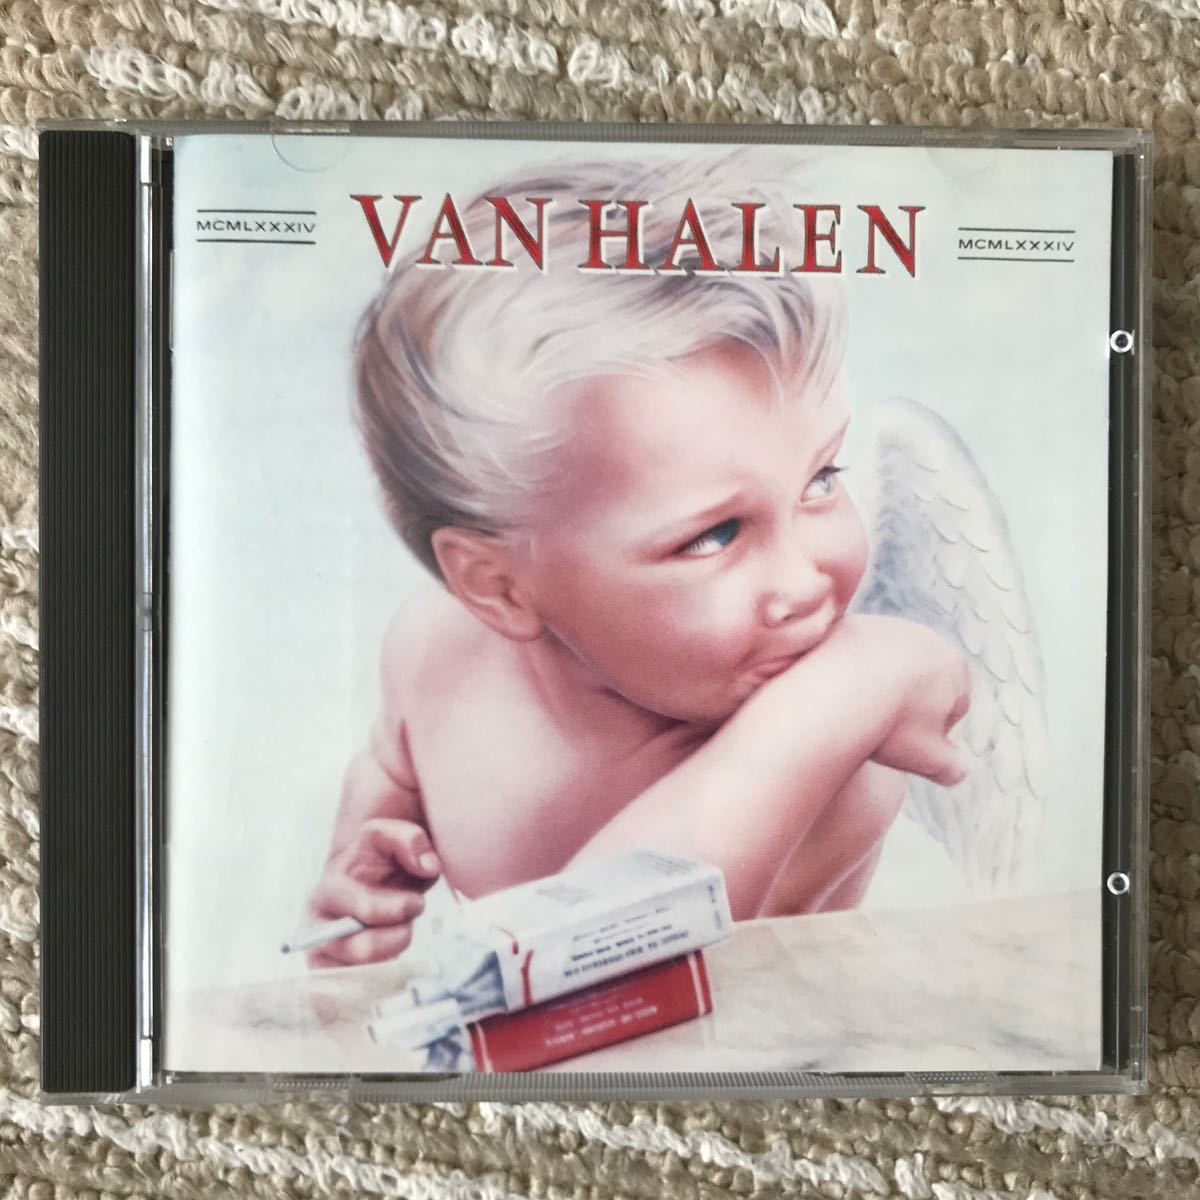 CD VAN HALEN 1984